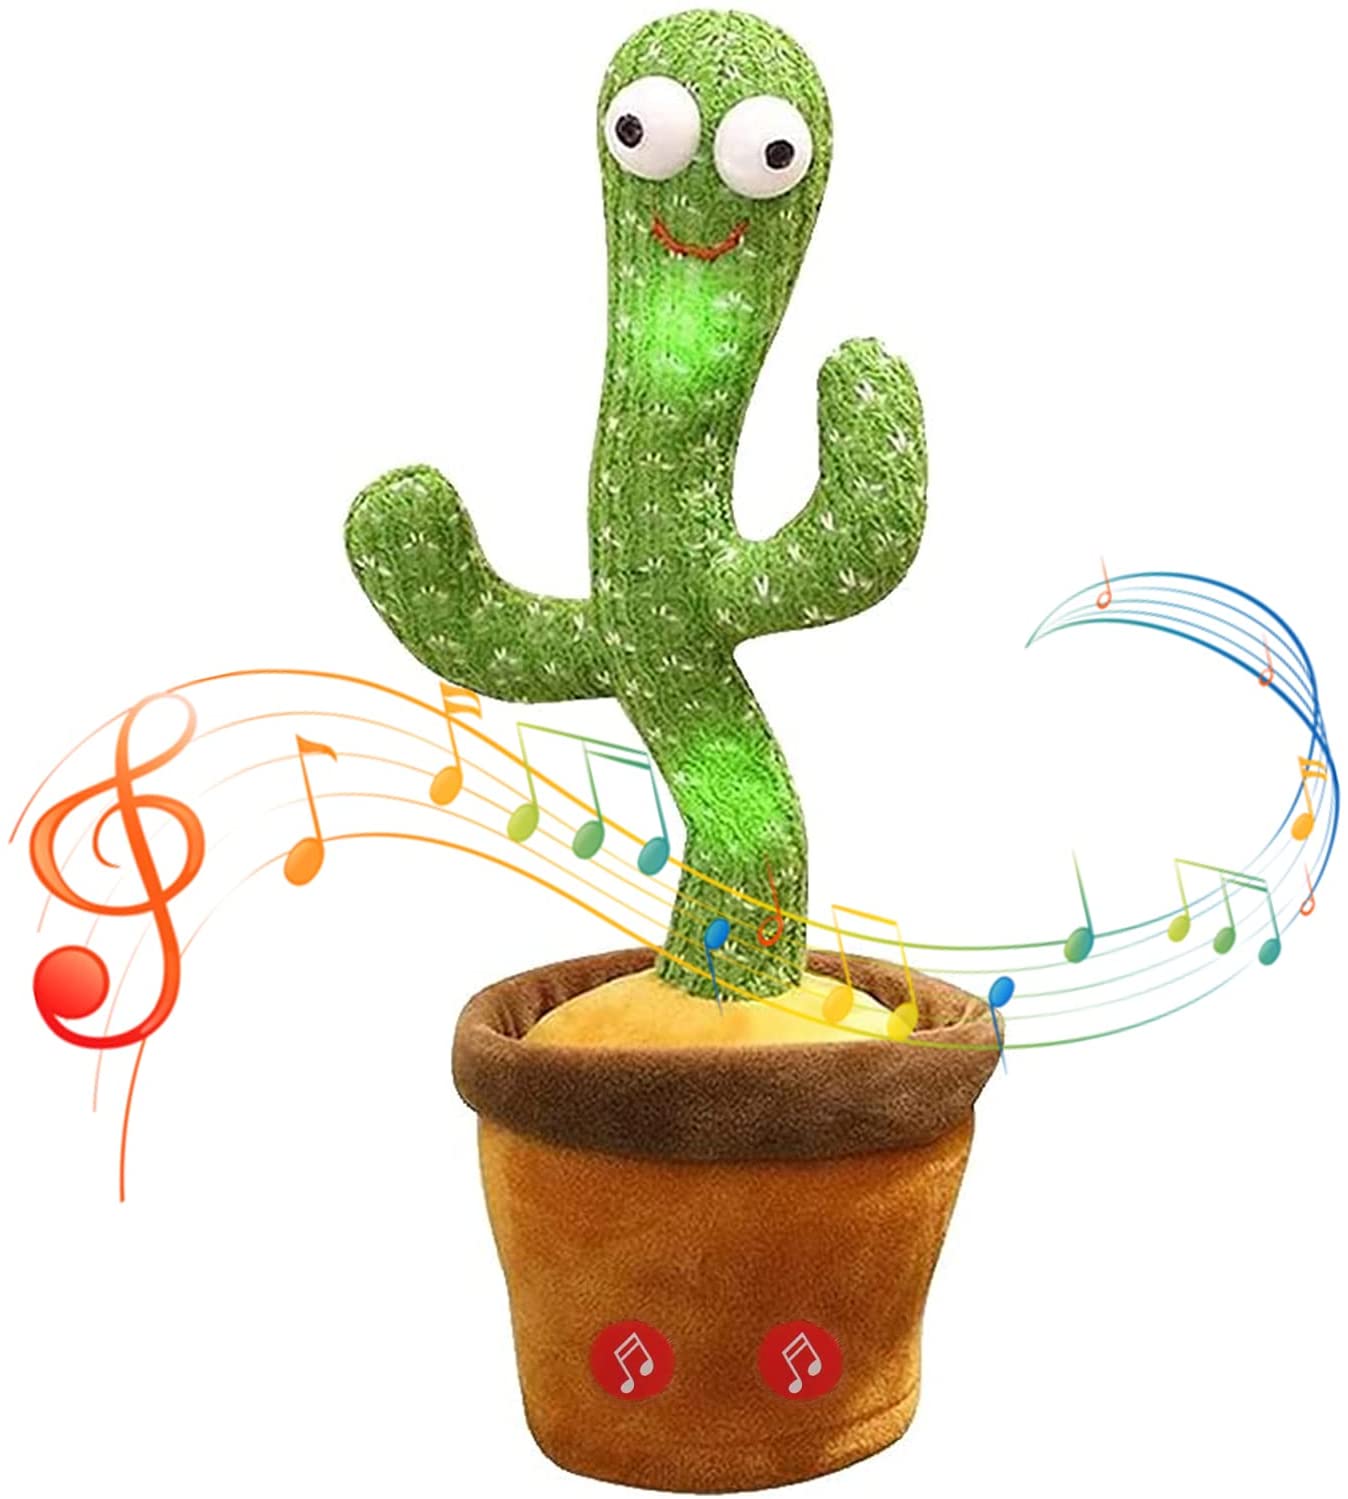 کاکتوس رقصنده, خرید کاکتوس رقصنده, قیمت کاکتوس رقصنده, سفارش کاکتوس رقصنده, کاکتوس رقصنده تخفیف ویژه, تخفیفانه کاکتوس رقصنده, کاکتوس, رقصنده, Dancing Cactus, کاکتوس رقصنده Dancing Cactus,Magic pot of dancing cactus,Magic pot of dancing cactus,